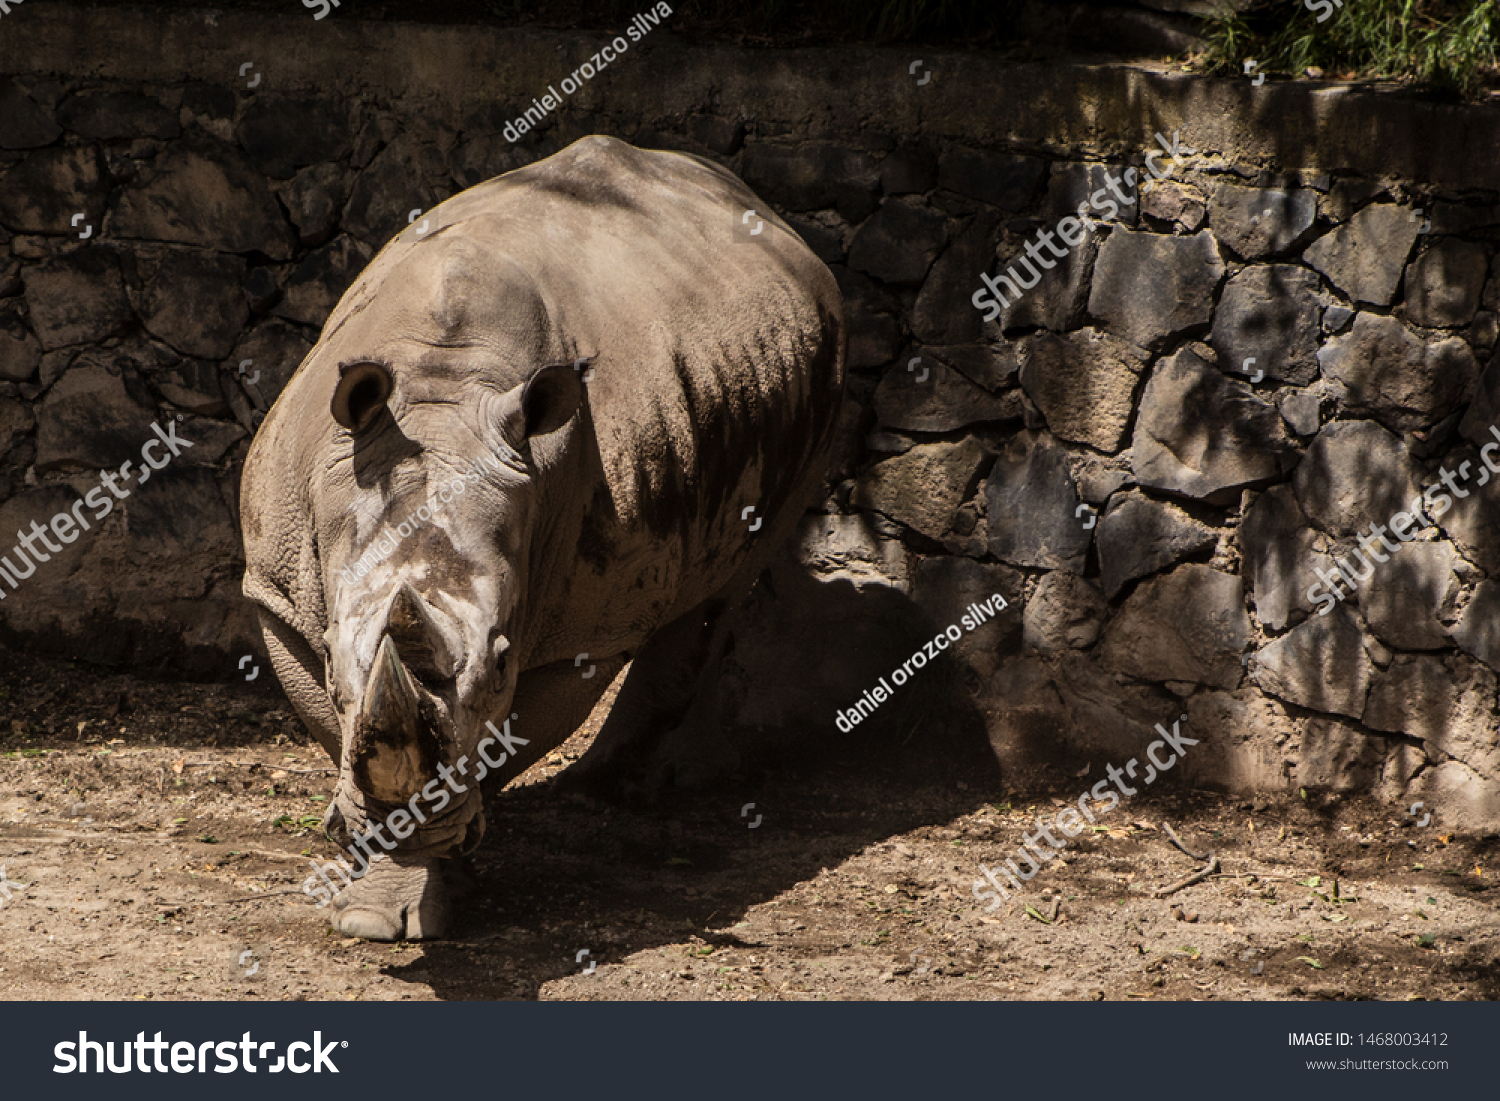 Cool rhino